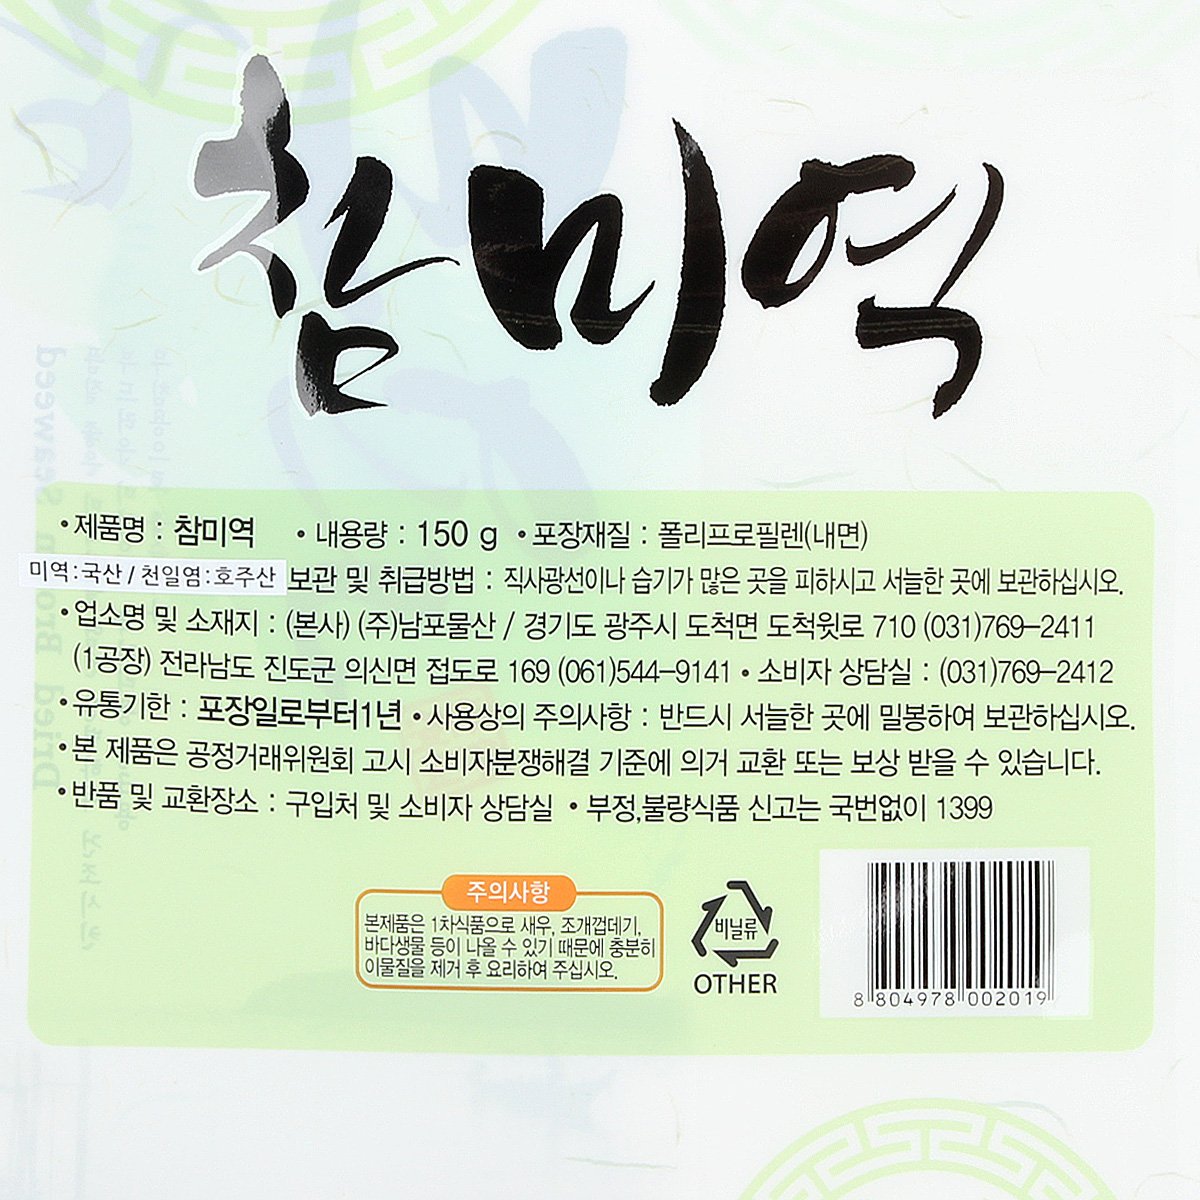 韓國食品-[안옥남] 참미역 150g